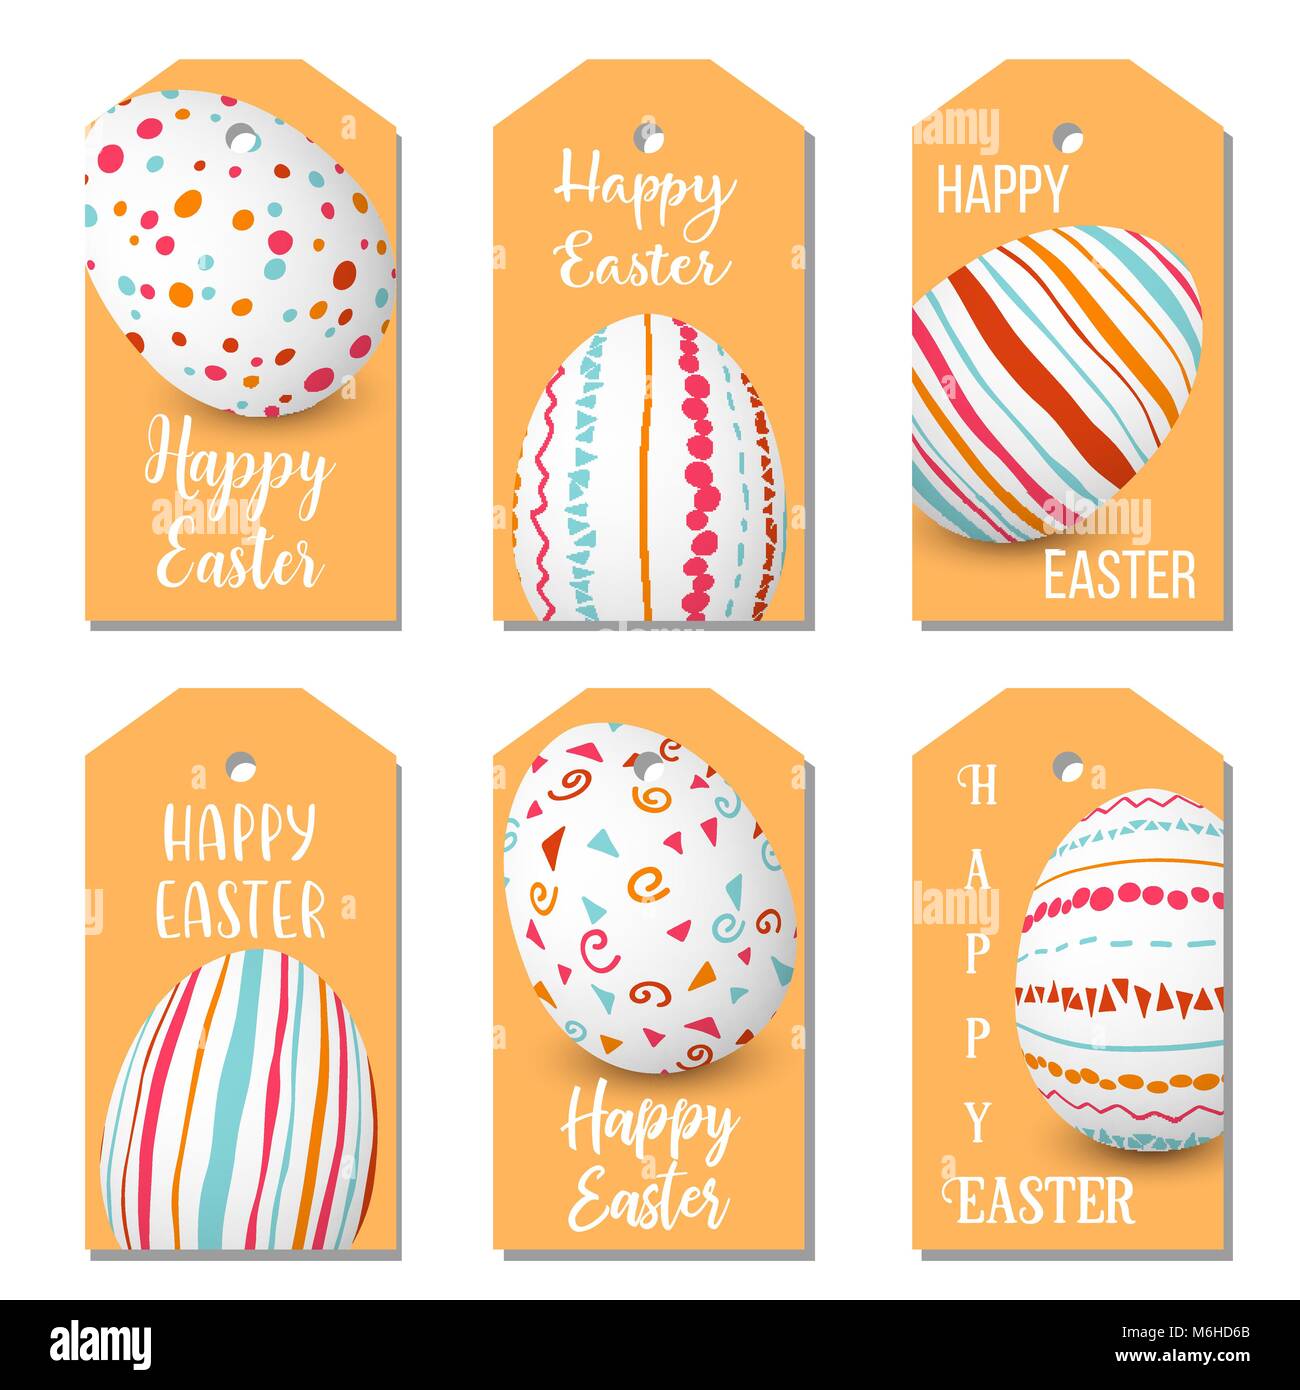 Felice Pasqua uova golden set di etichette. 6 tag di nastro di raccolta uova colorate progettato come etichette. Decorate in maniera semplice ornamenti. Illustrazione Vettoriale